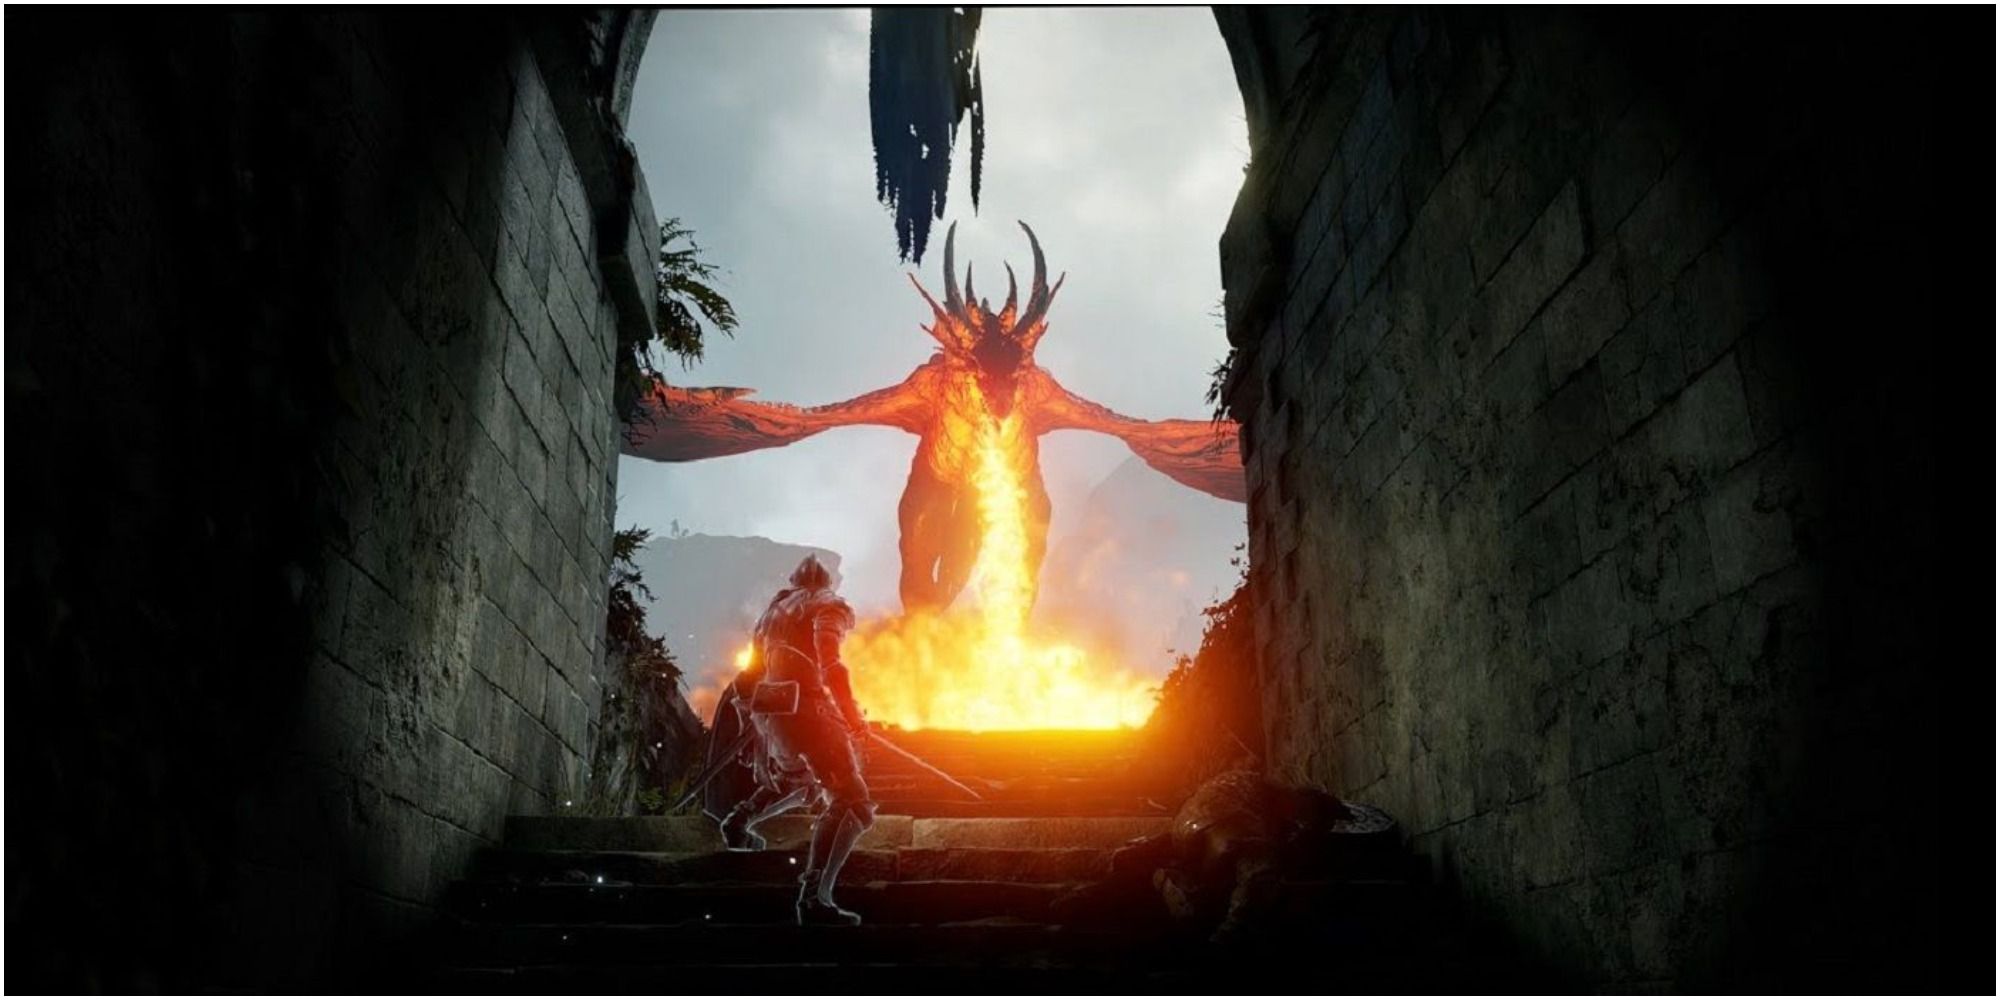 Avoiding the dragon's fiery breath in Demon's Souls